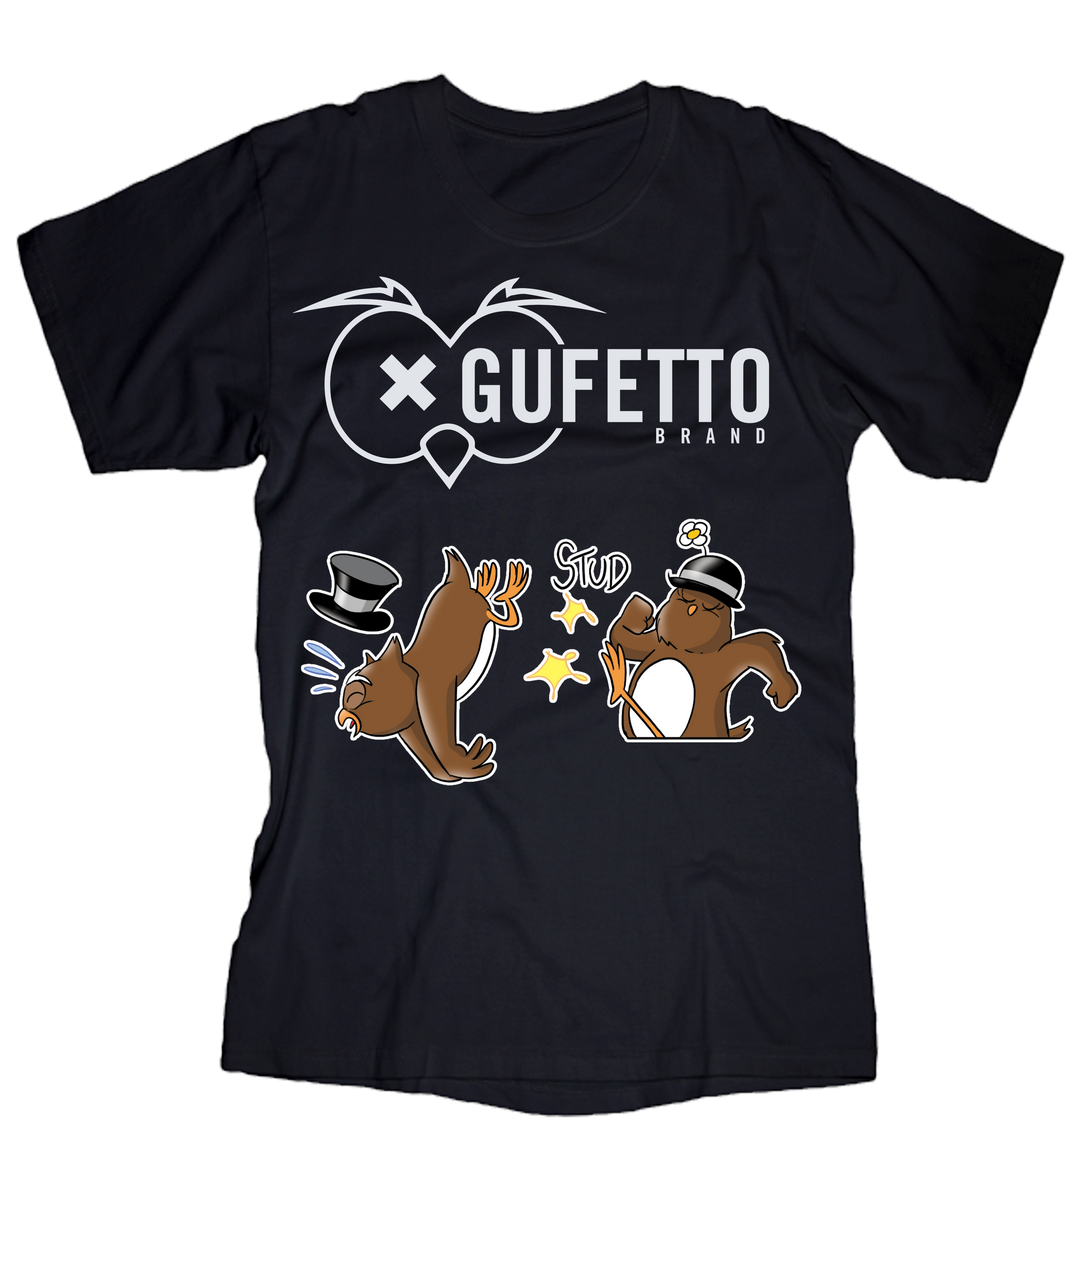 T-shirt Uomo Gufetto Brand Gufo e Gufetta Edition - Gufetto Brand 